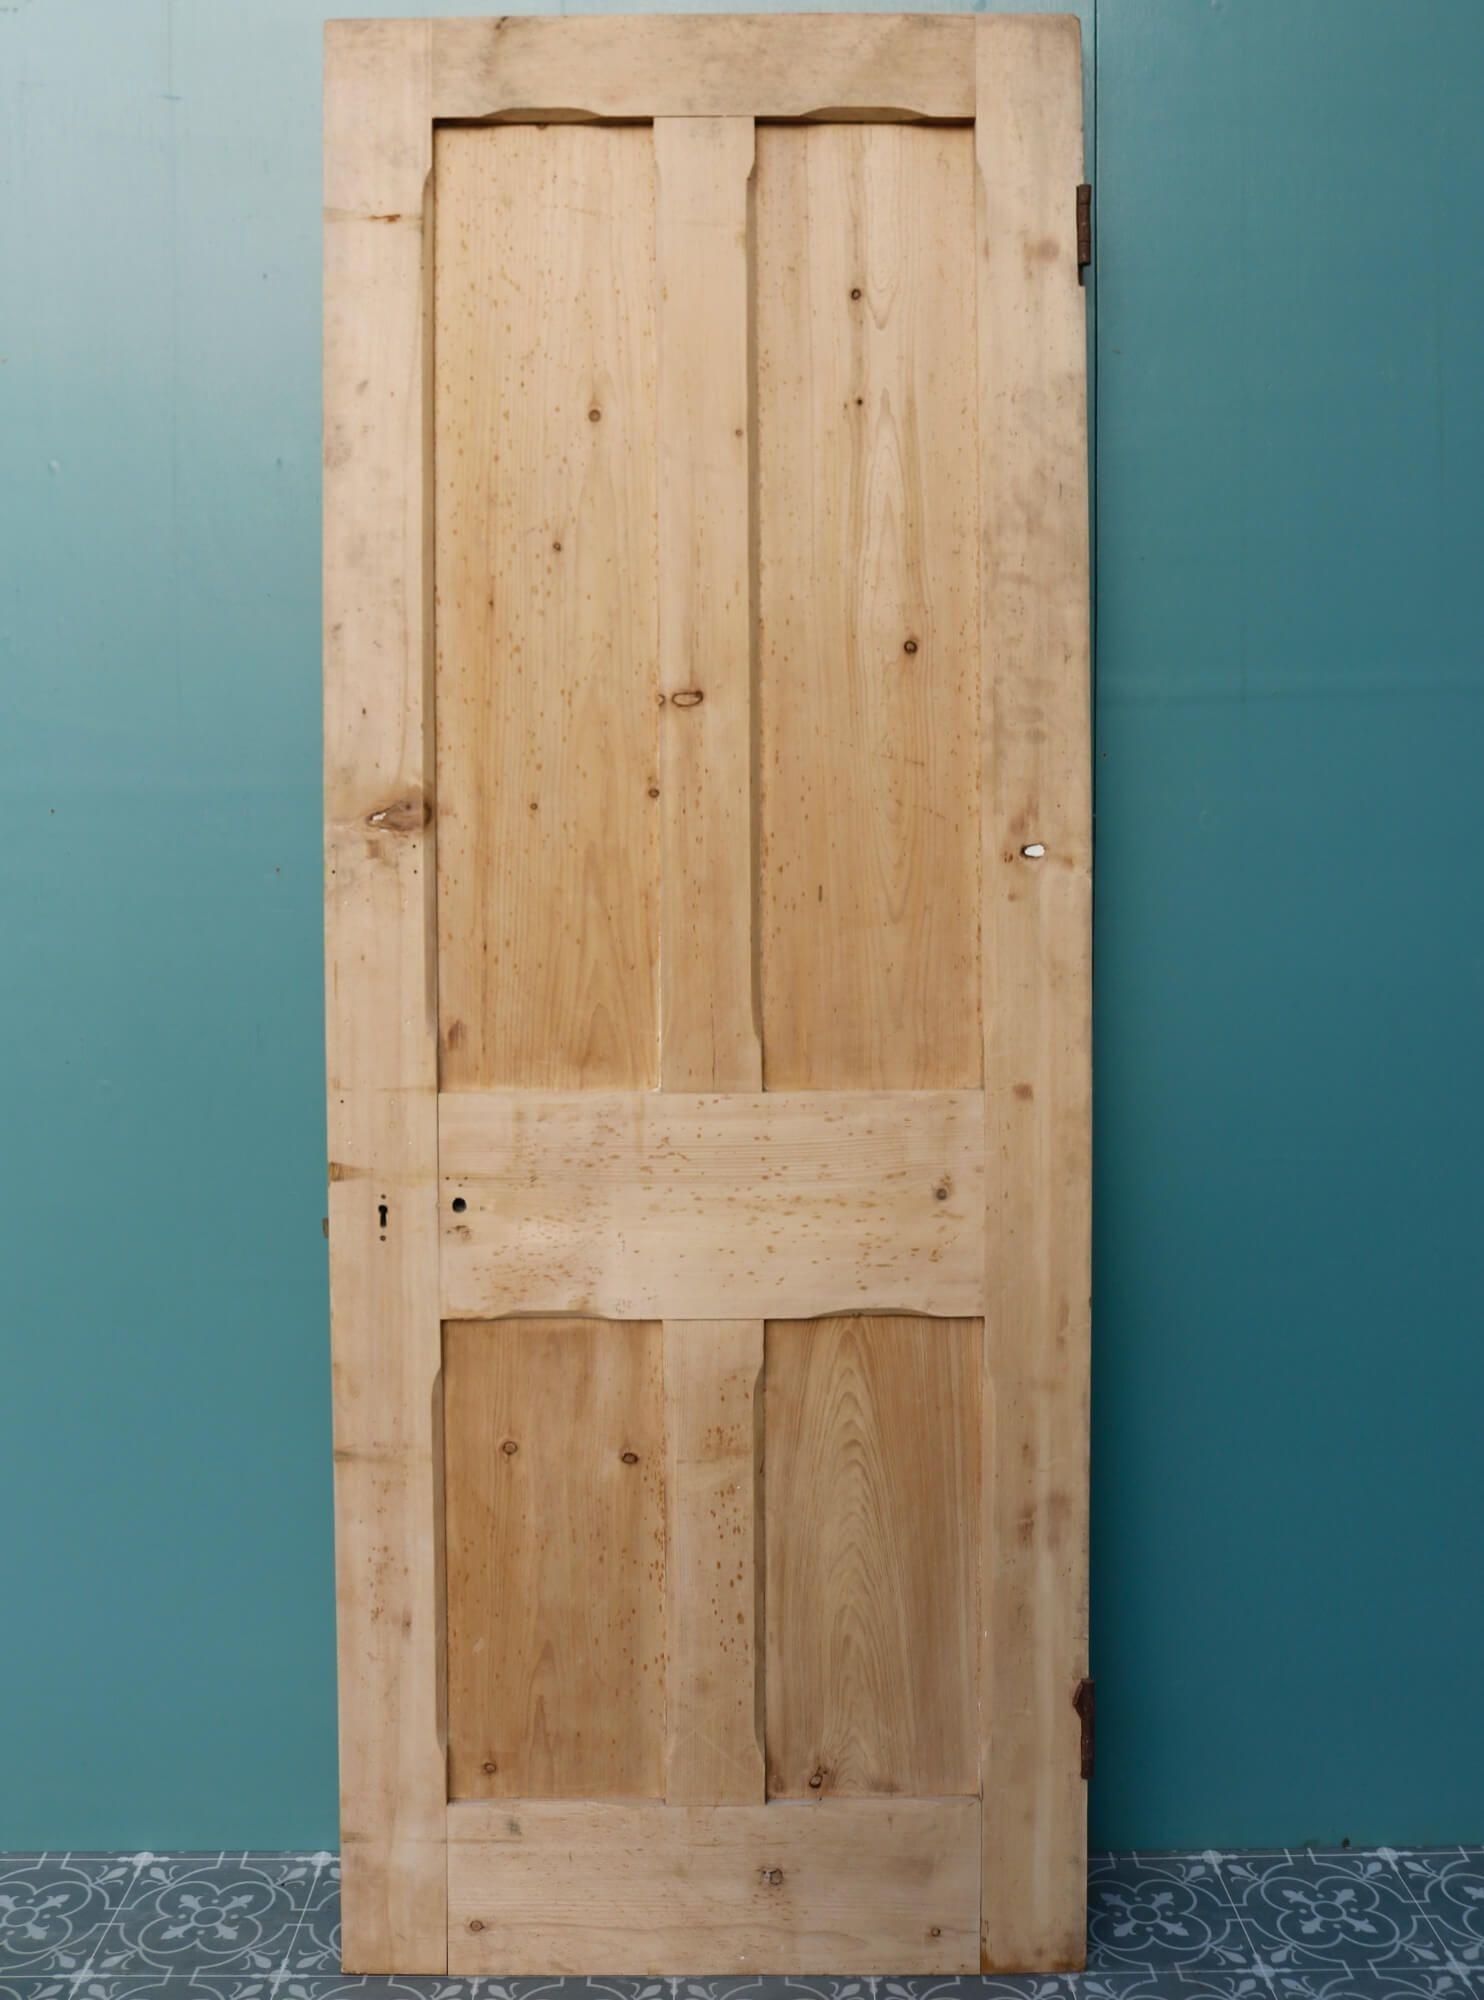 stripped wooden doors